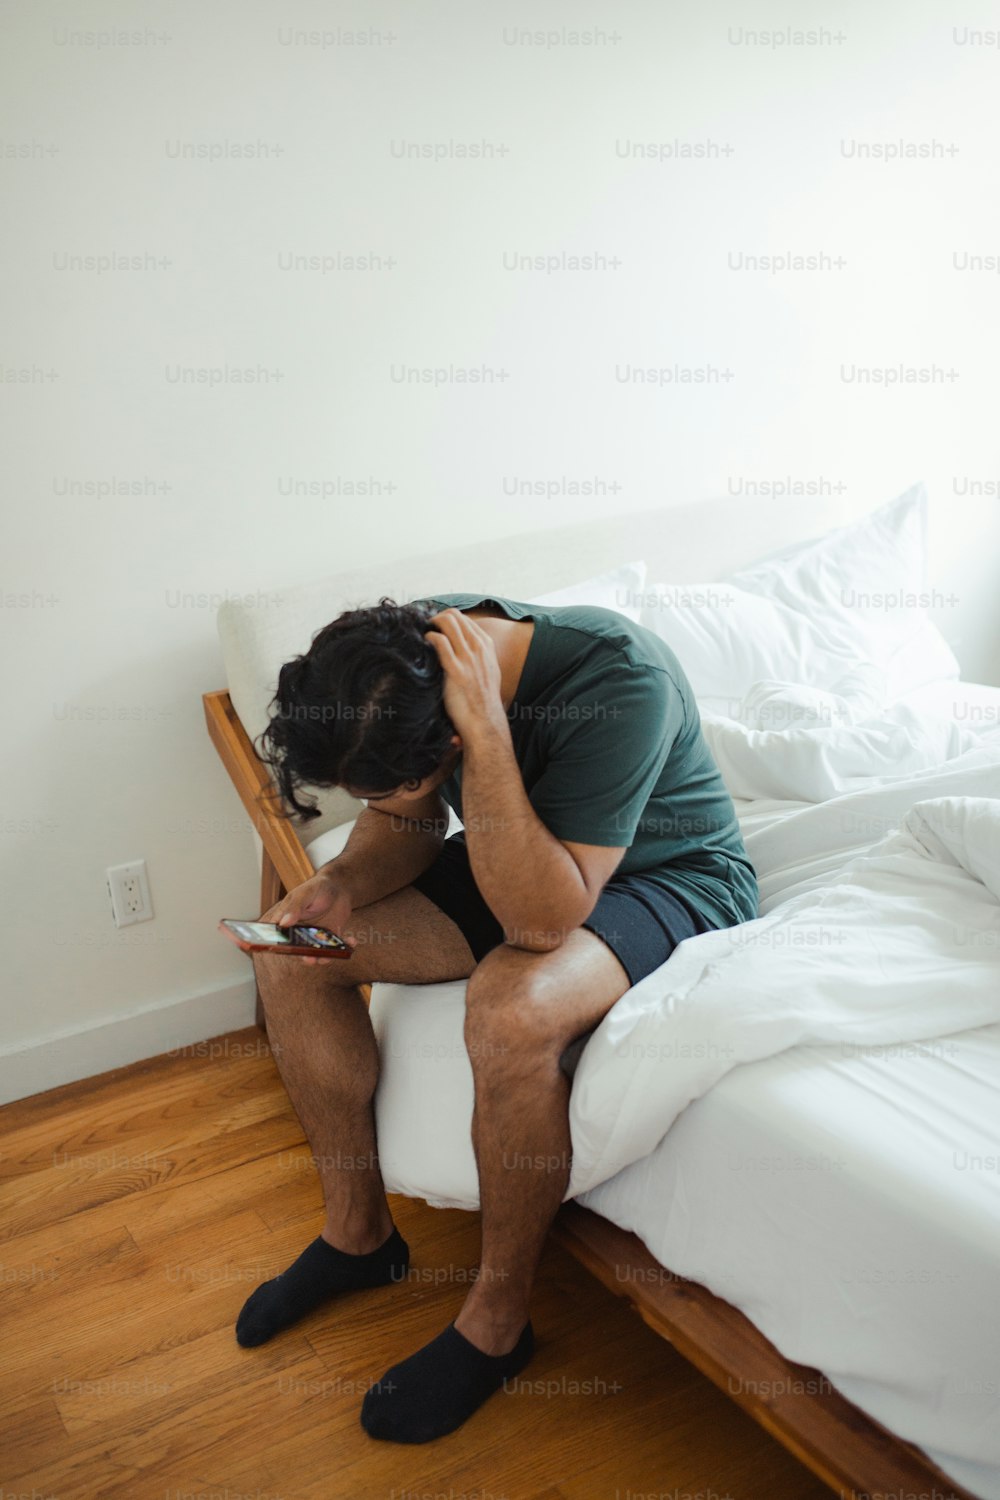 Un hombre sentado en una cama mirando su teléfono celular